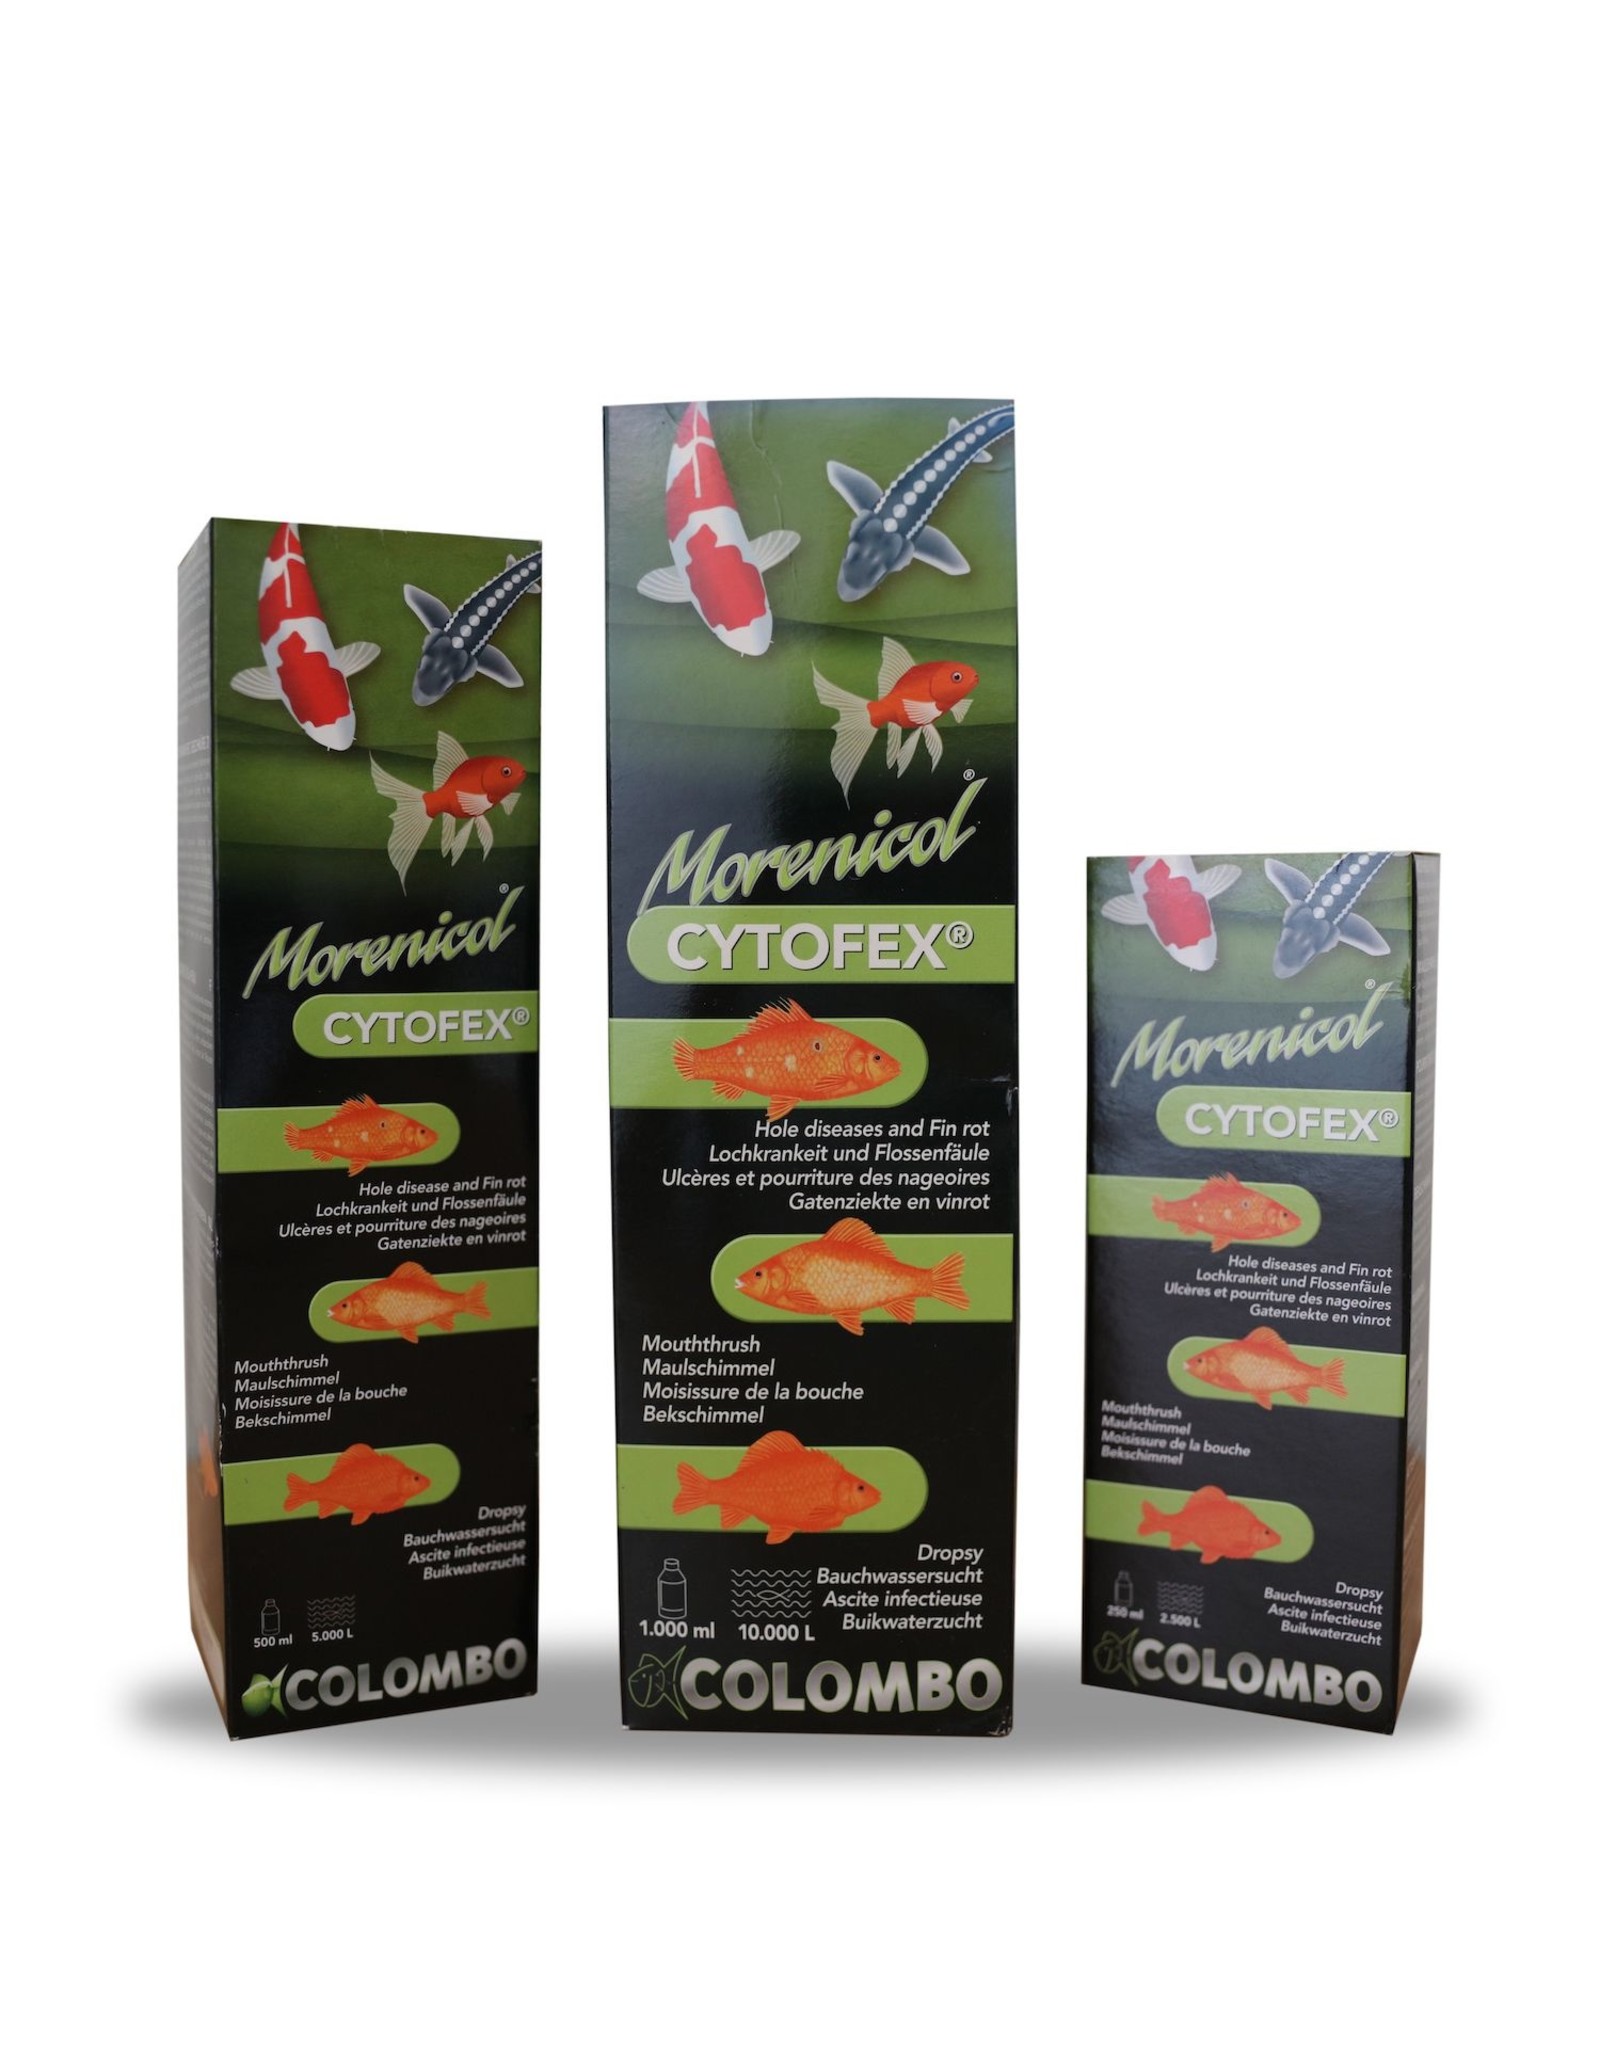 Colombo Morenicol Colombo Morenicol Cytofex ist ein einzigartiges Kräuterprodukt, das gegen bakterielle Infektionen wirksam ist.